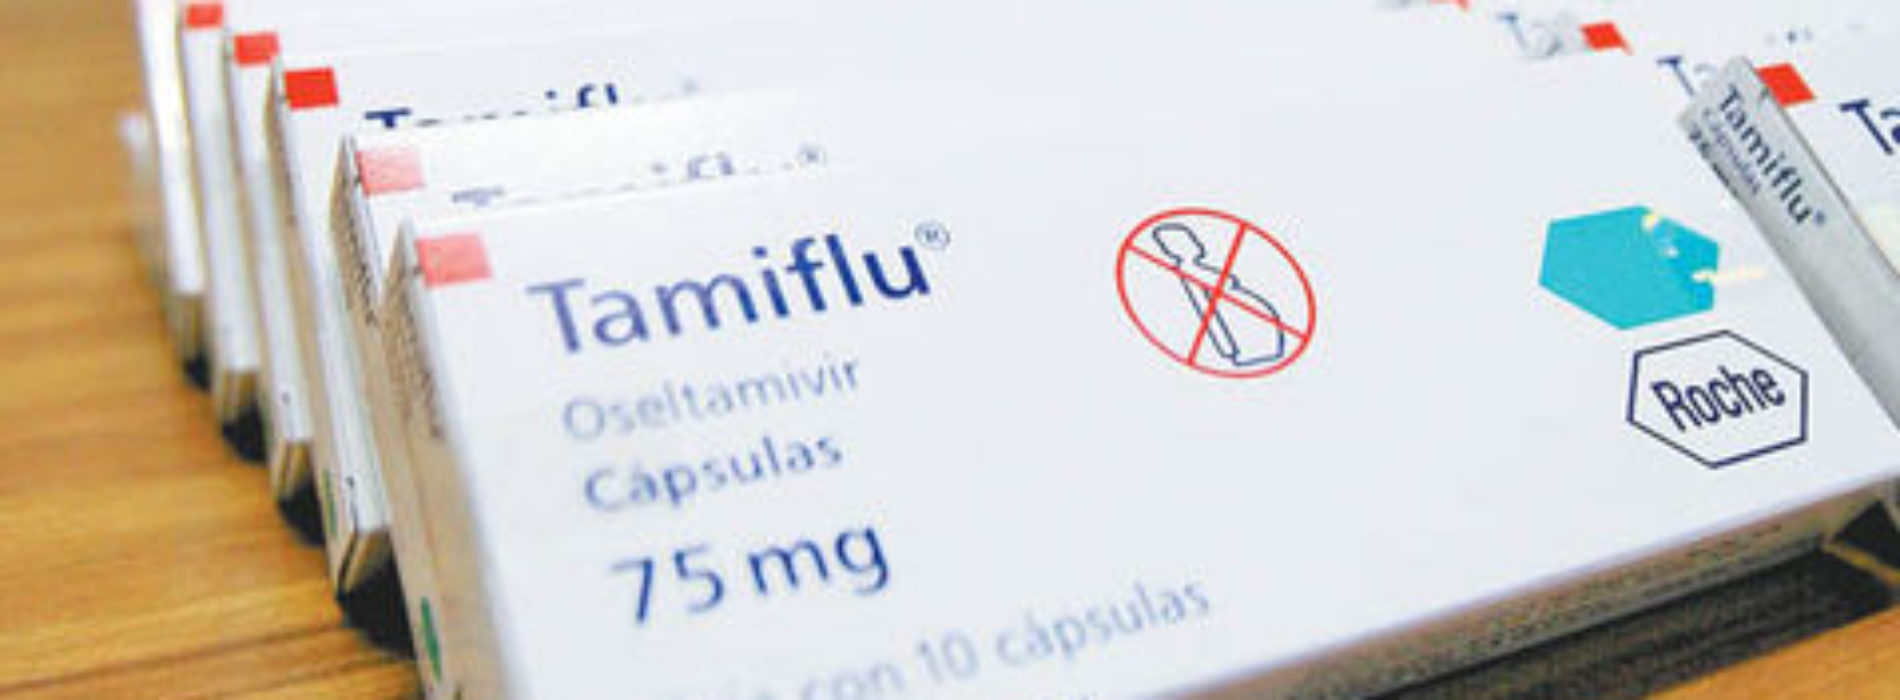 Hay suficiente medicamento para tratar influenza: Ssa